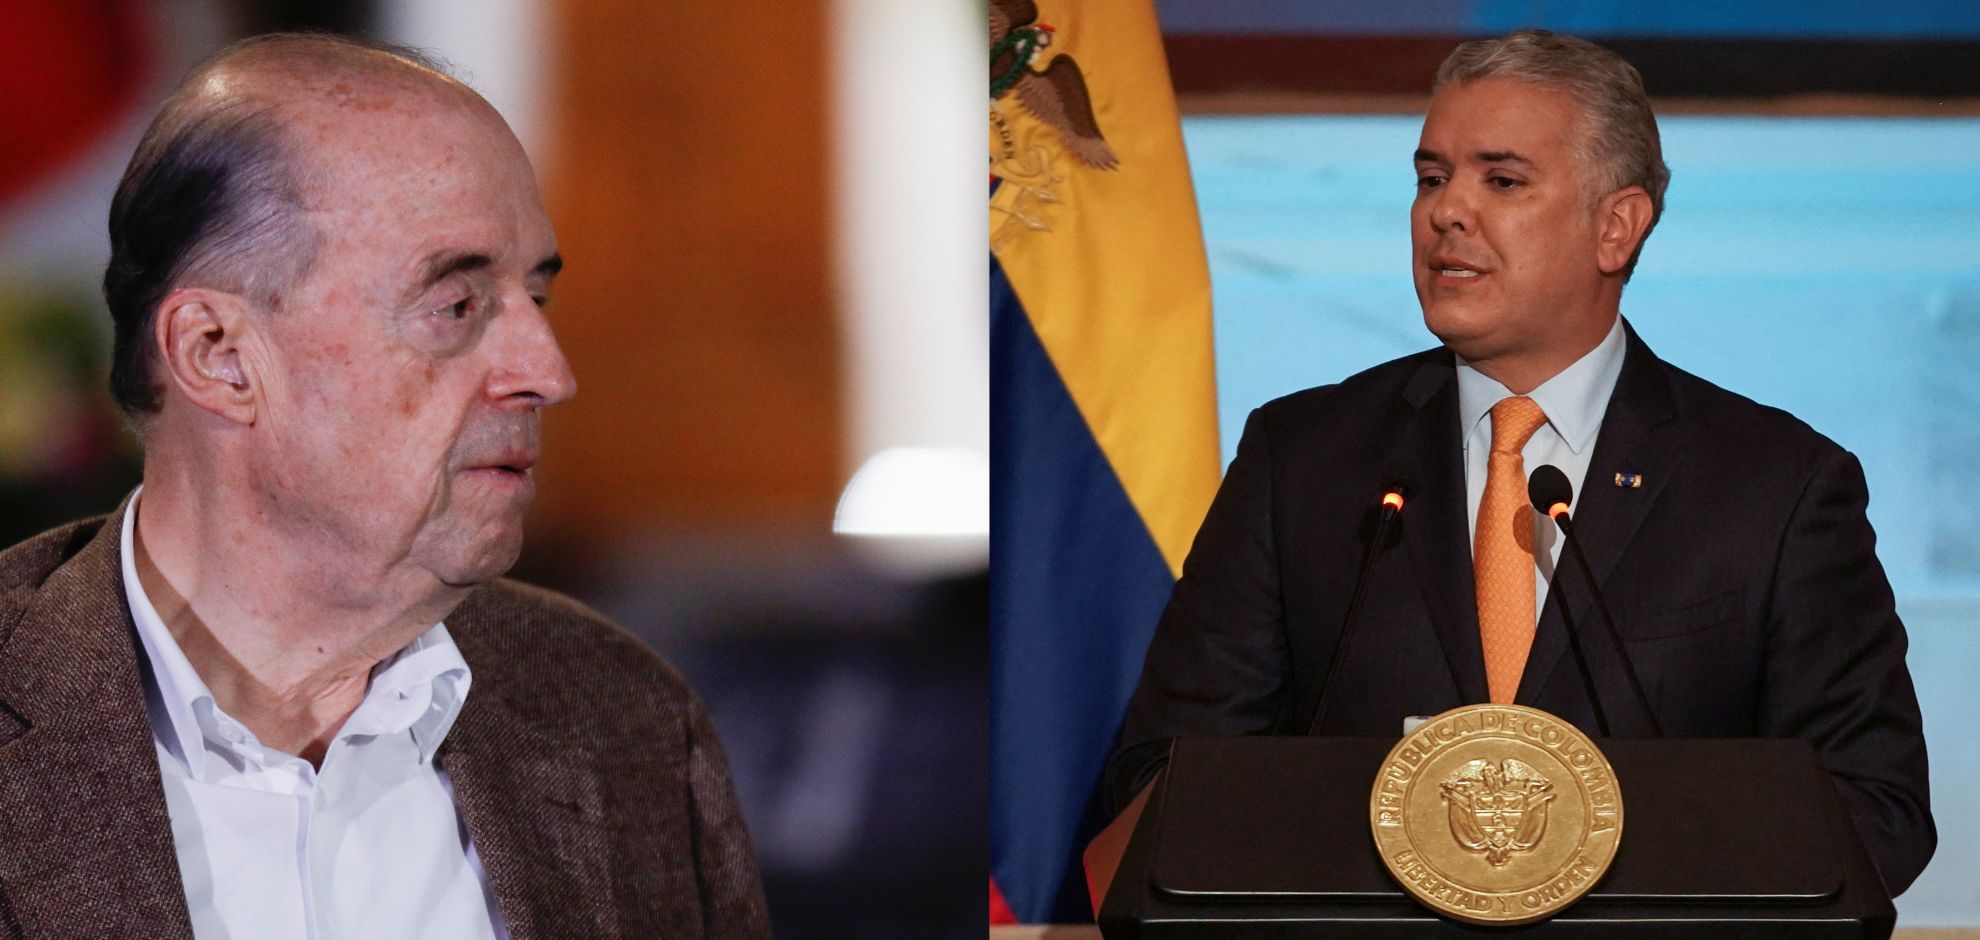 Álvaro Leyva llamó a Iván Duque “necio y retardatario” y el expresidente no se quedó callado